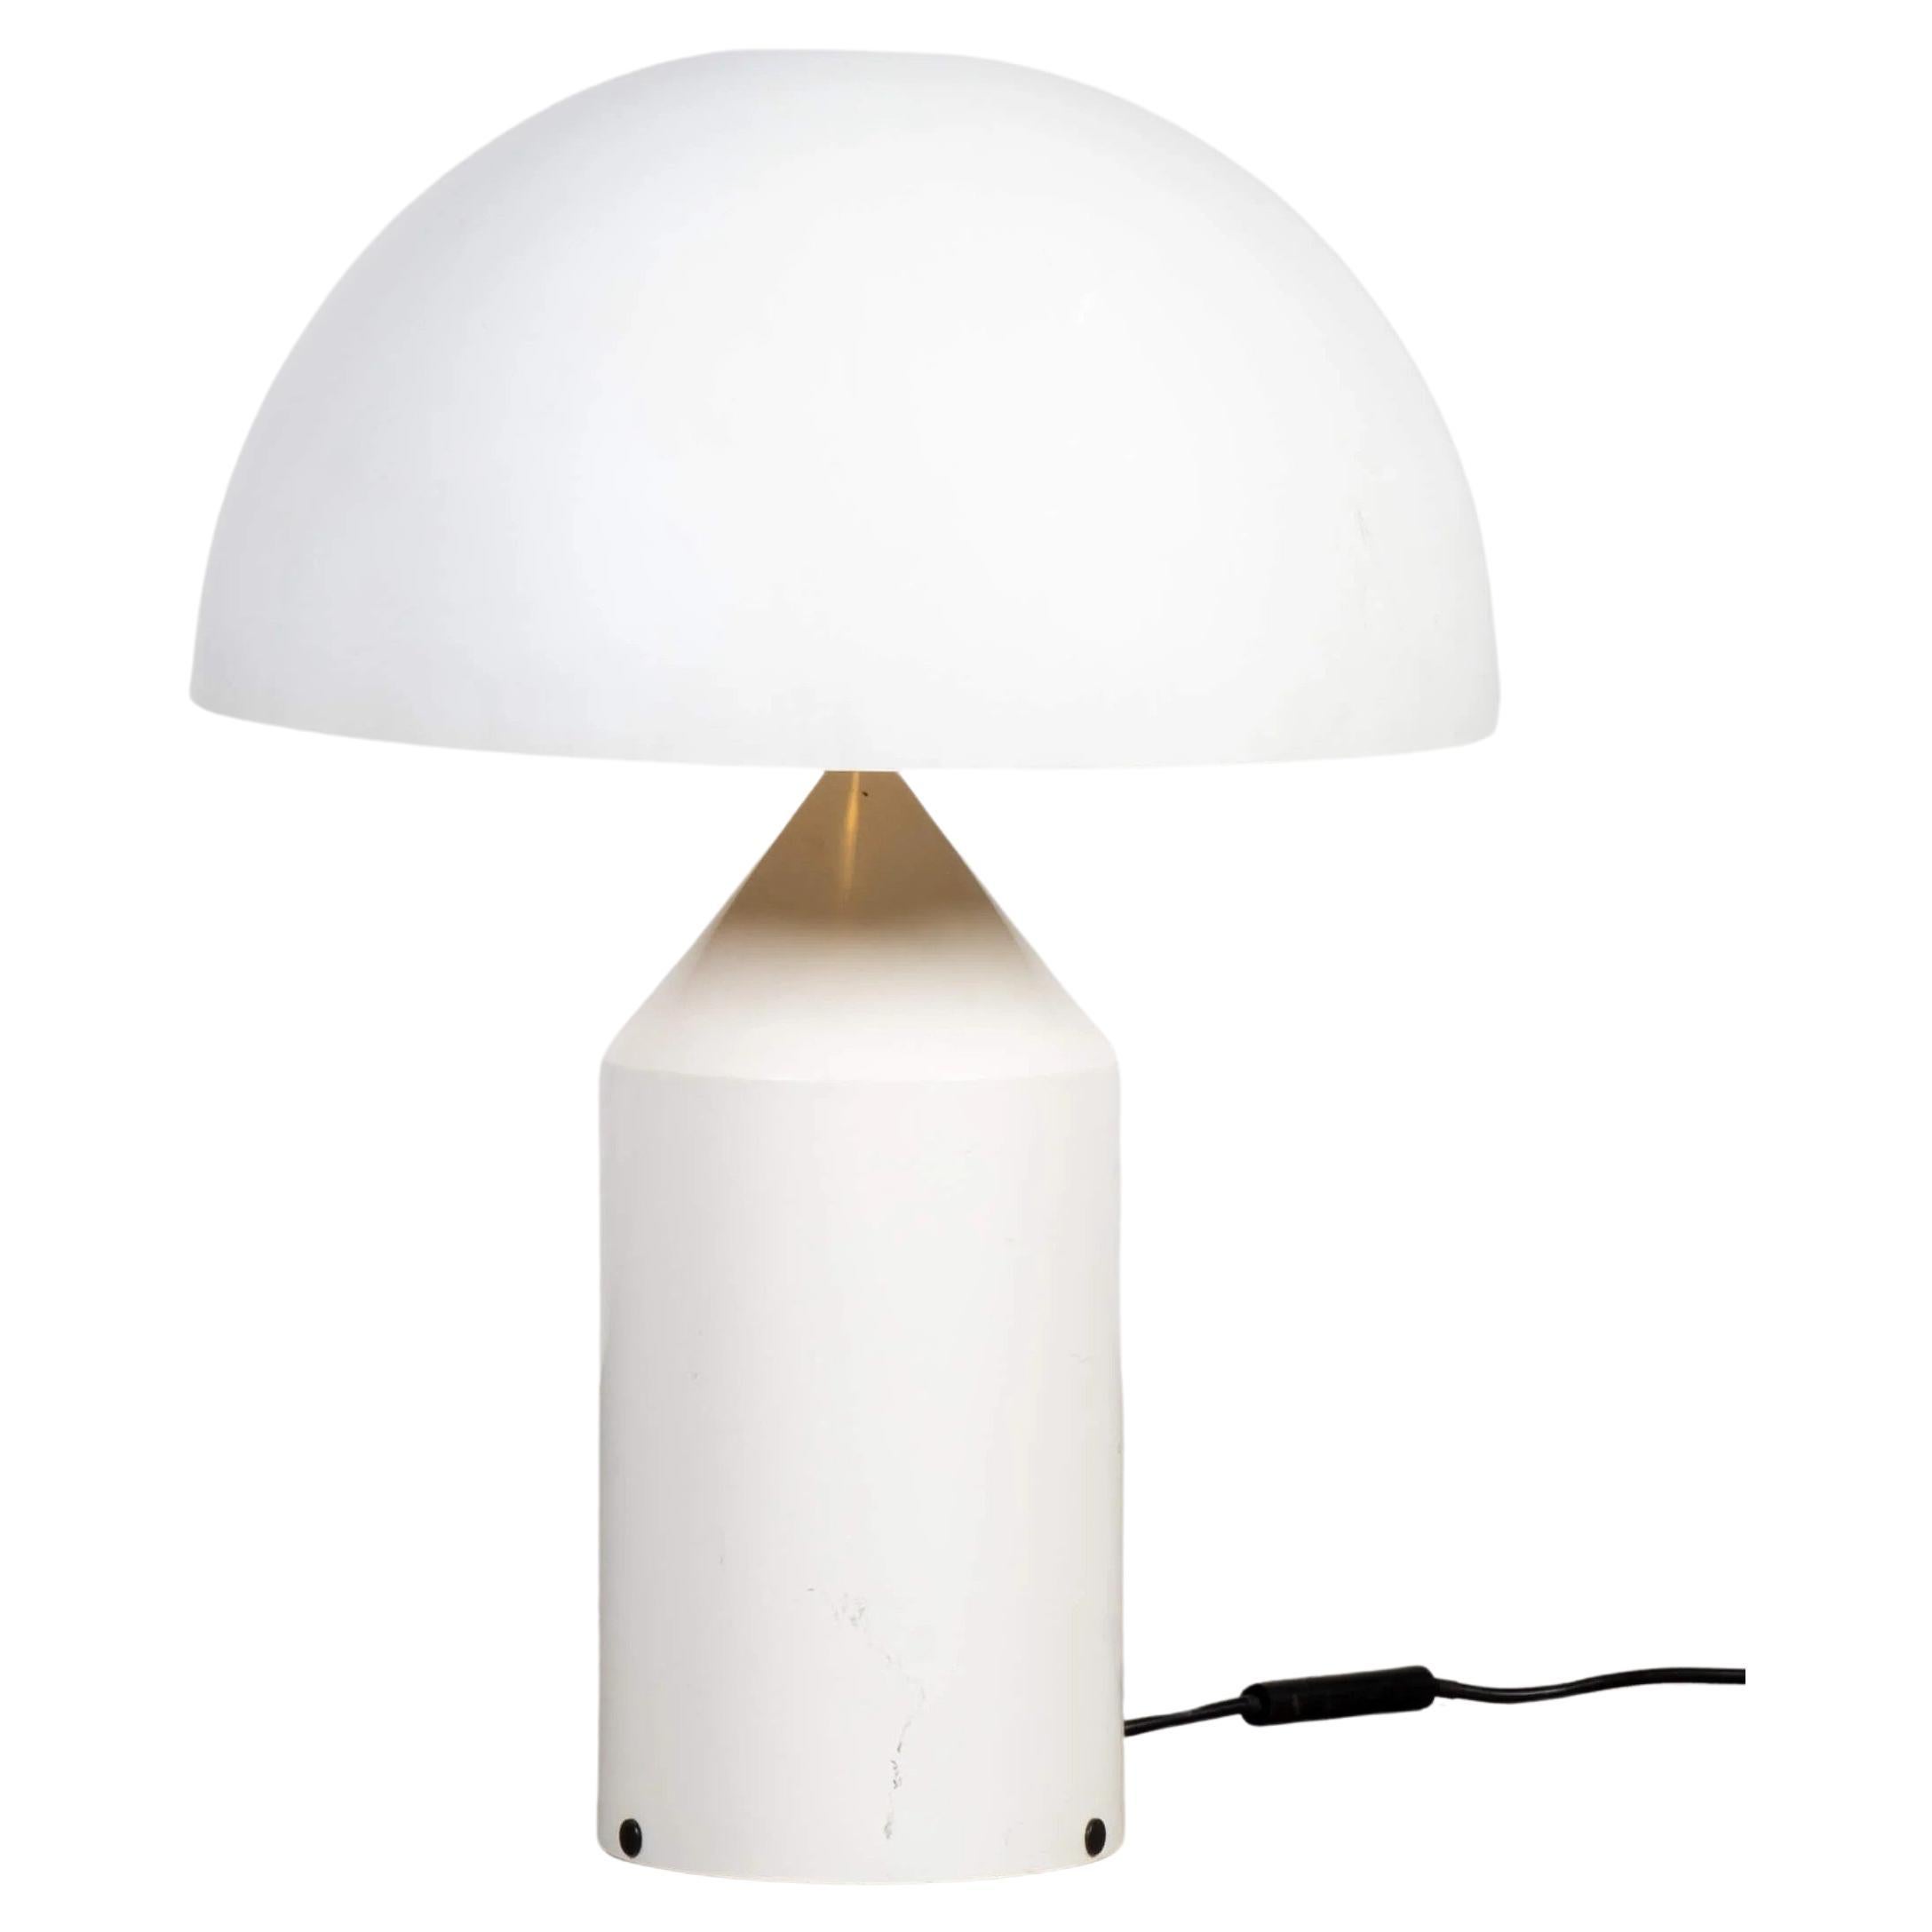 Lampe de table Atollo modèle 233, blanche, de Vico Magistretti pour Oluce